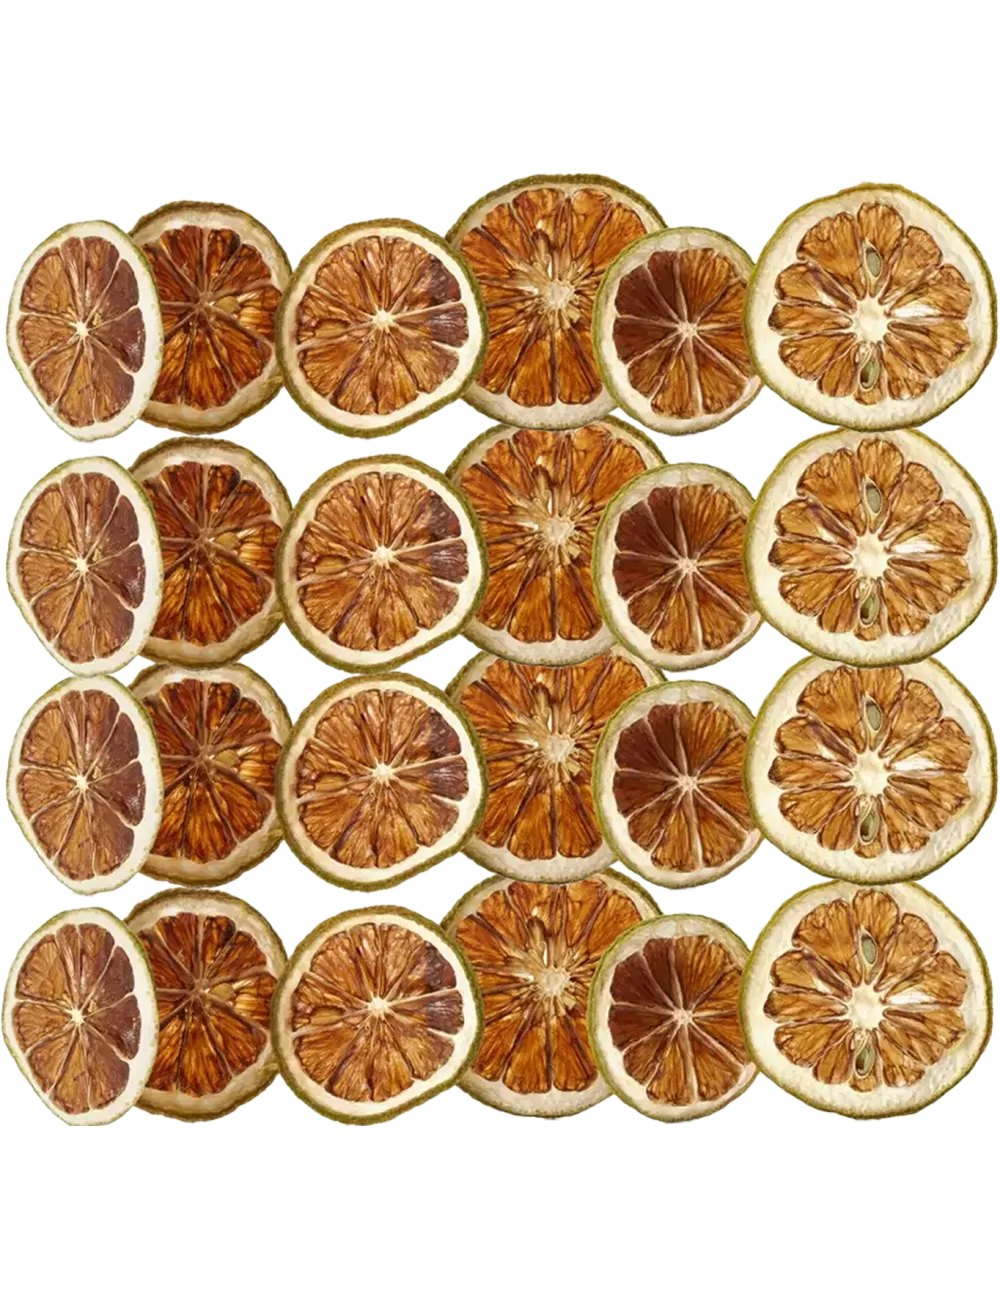 Citrons Verts - Plateau de 300g - Fruits Déshydratés